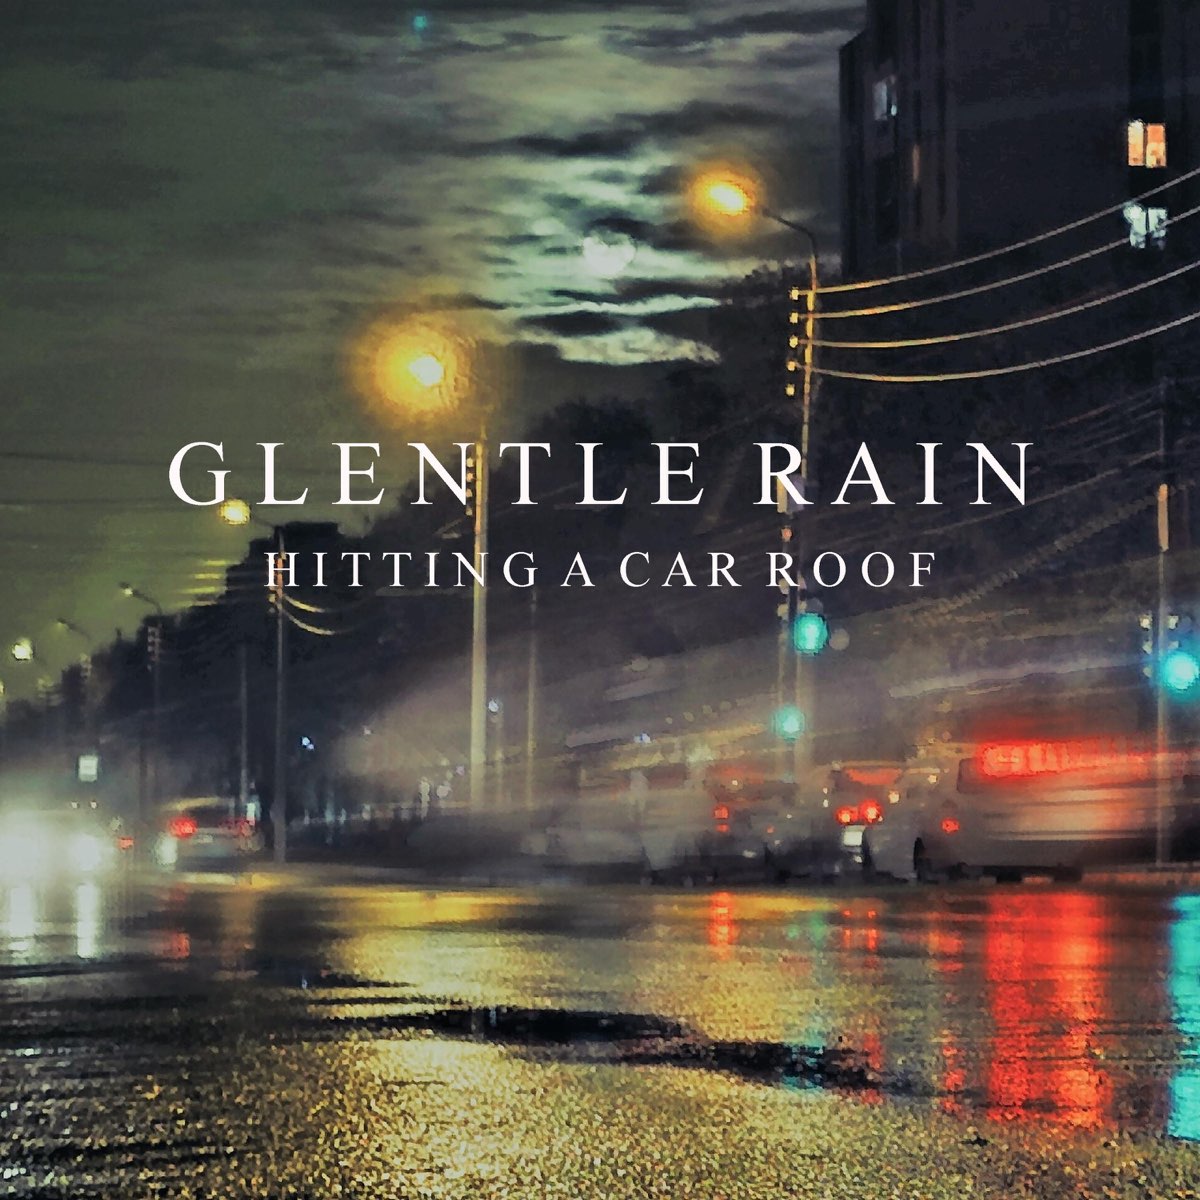 Gentle rain behr